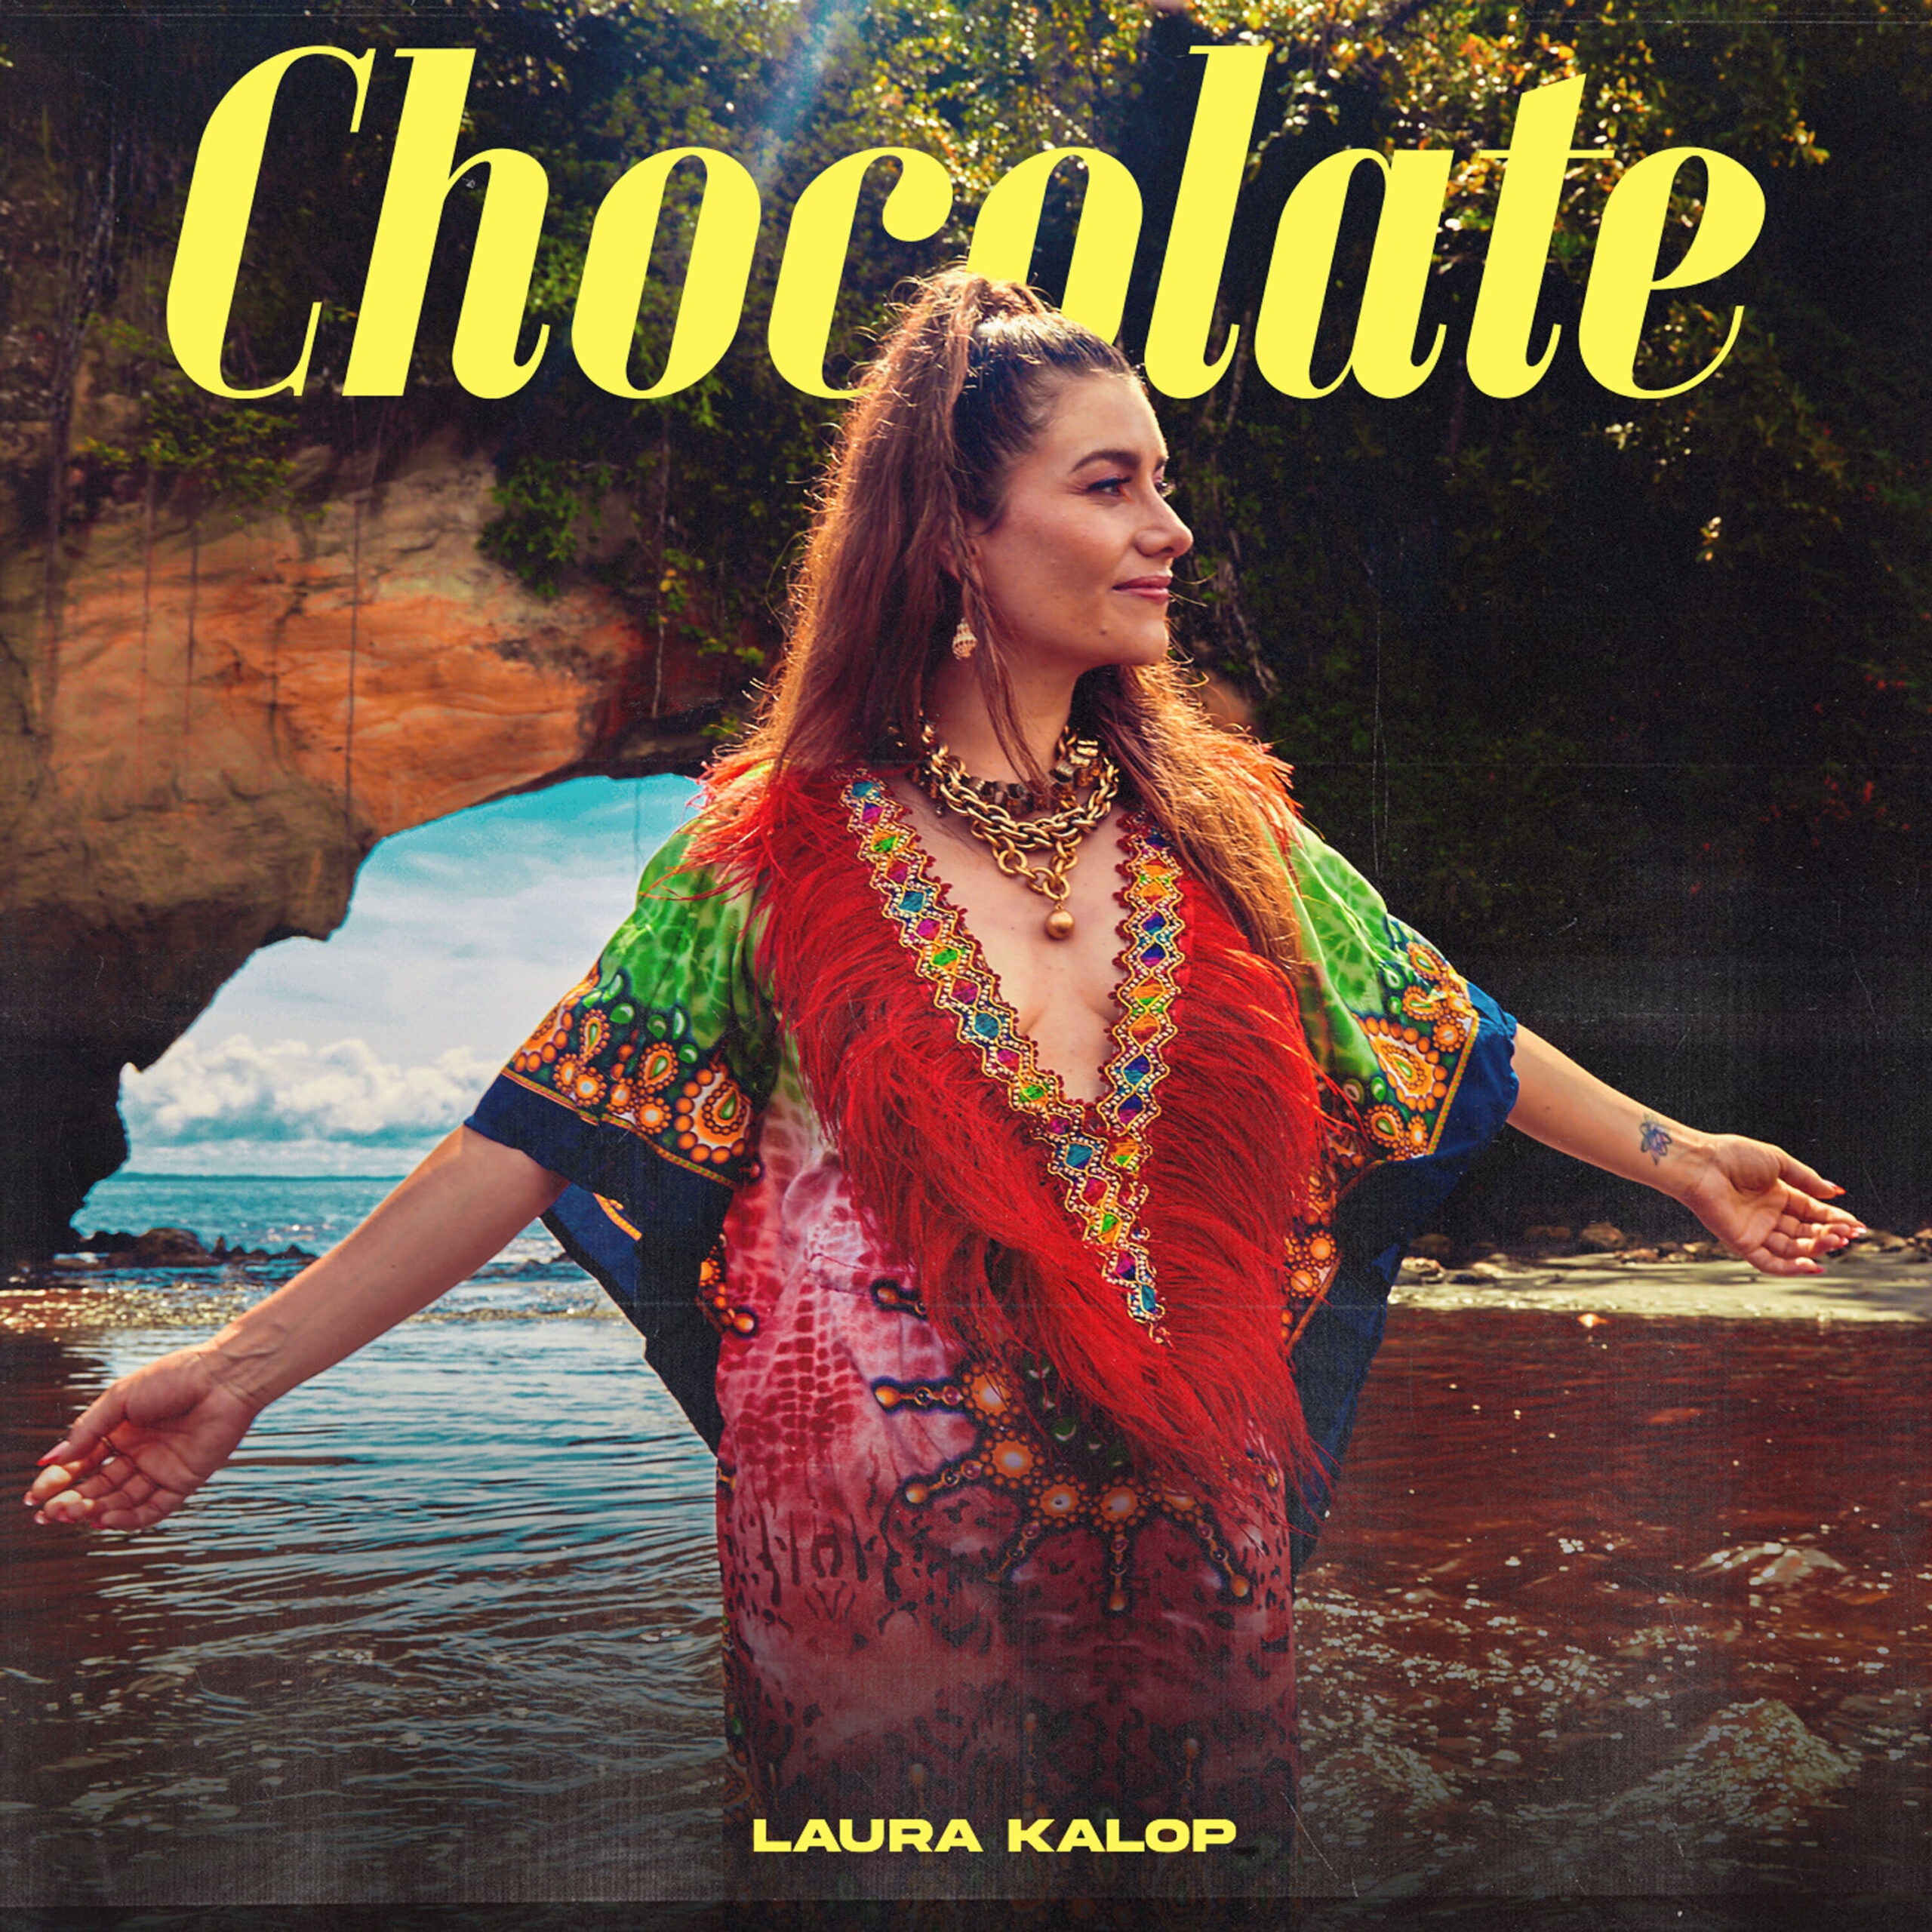 LAURA KALOP PRESENTA ‘CHOCOLATE’ UNA INMERSIÓN EN EL LATIR DEL CHOCÓ